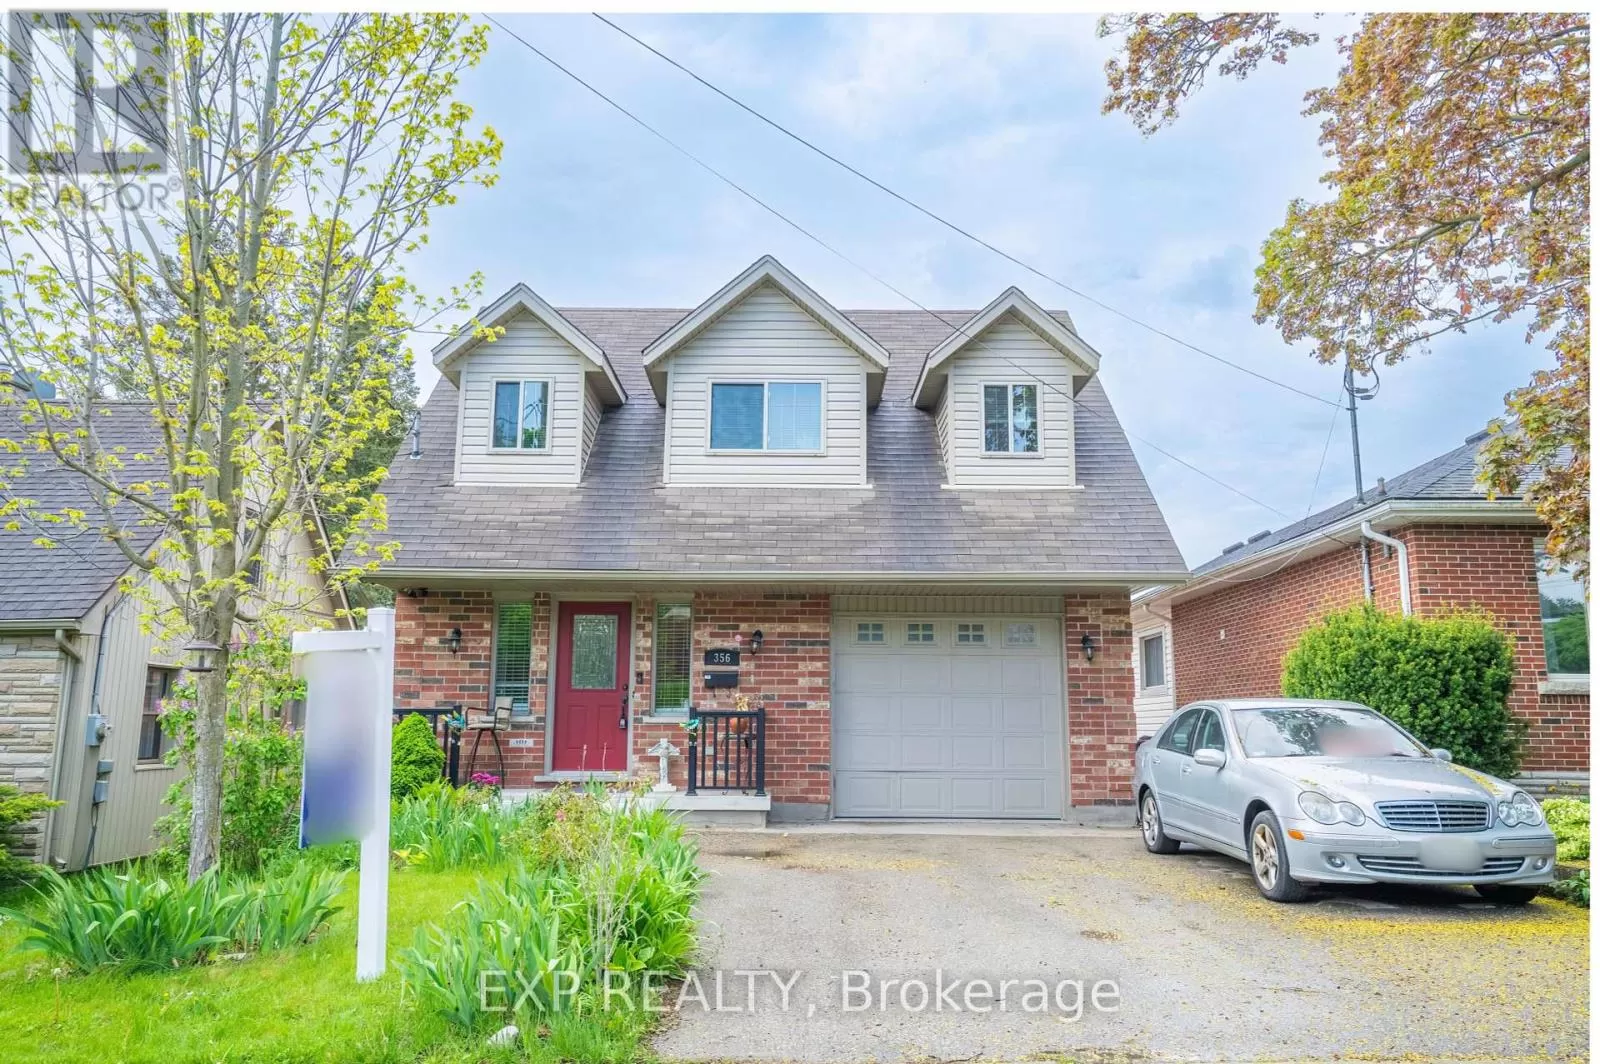 House for rent: 356 Stevenson Street N, Guelph, Ontario N1E 5B9